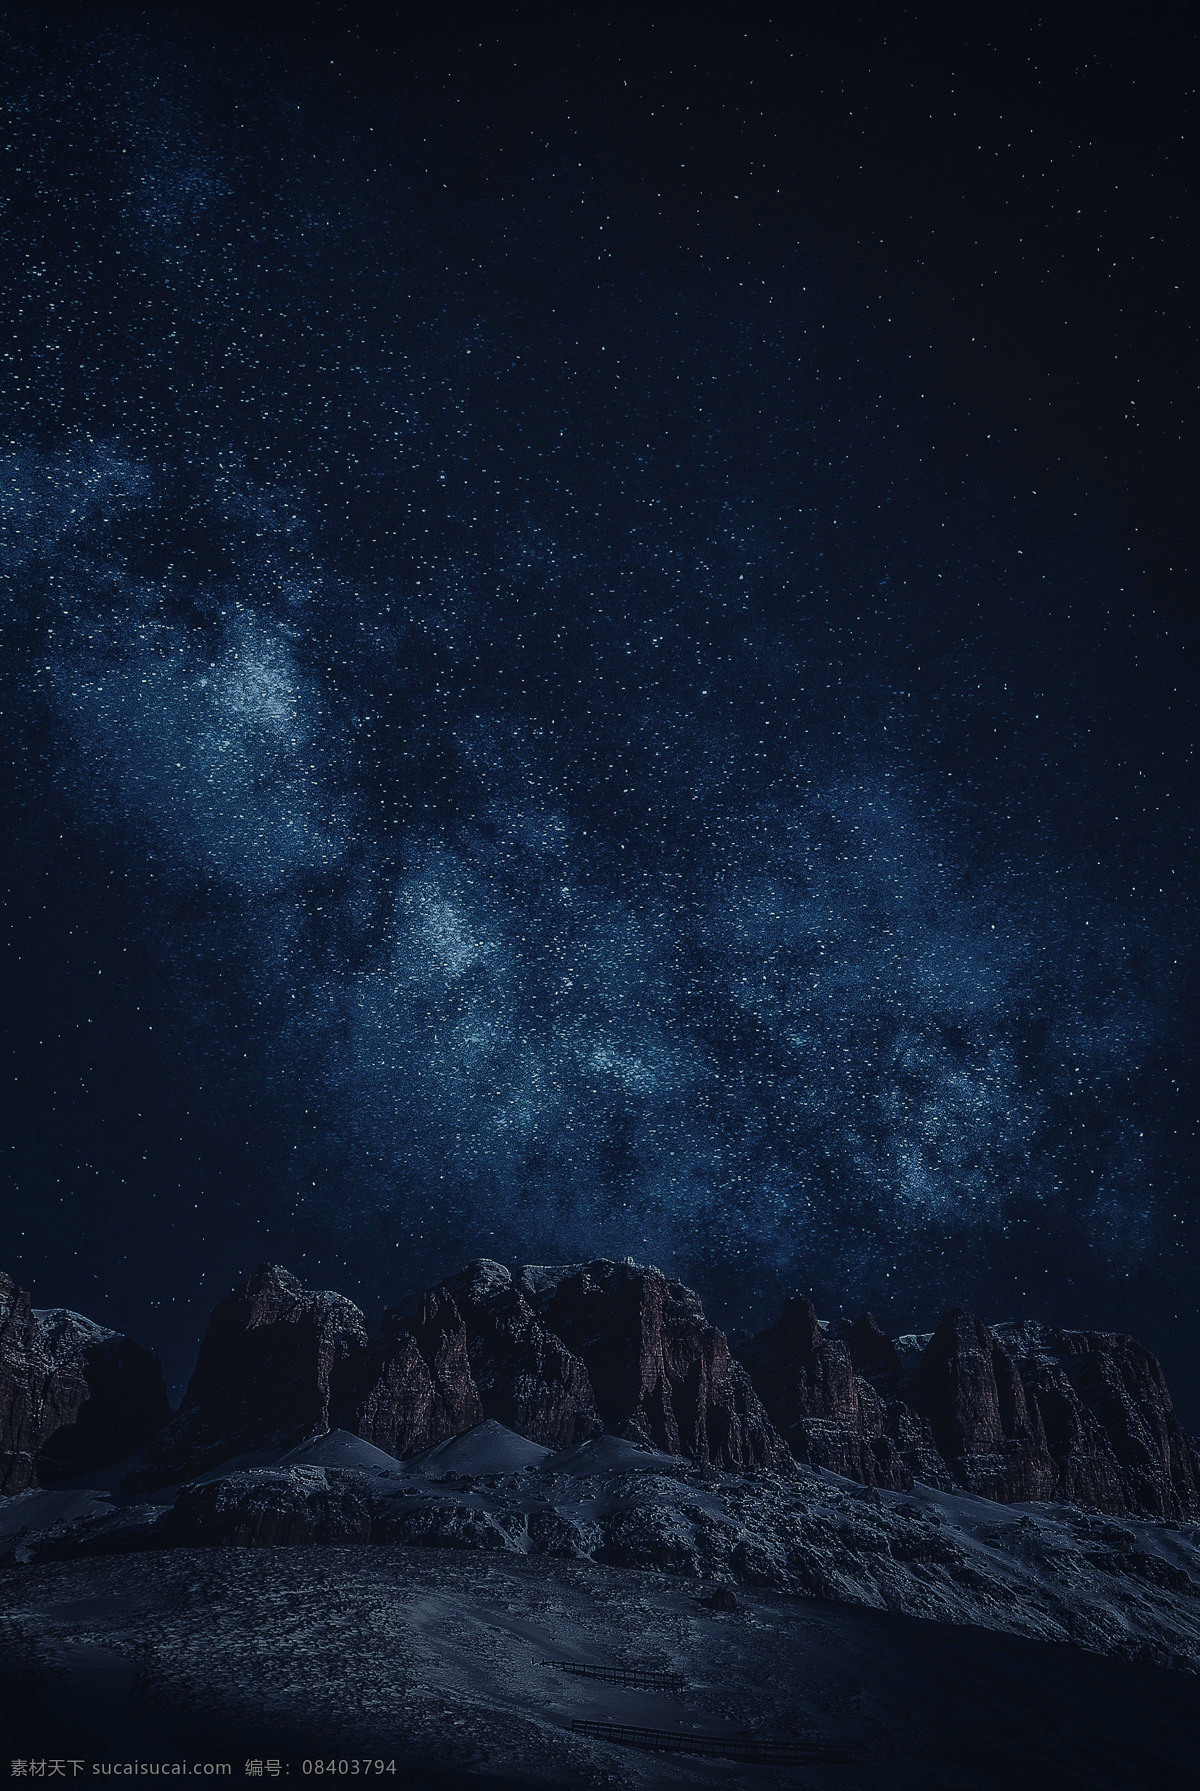 夜晚星空岩石 岩石 梦幻 星空 夜晚 深蓝色 高清 背景 大图 自然景观 自然风景